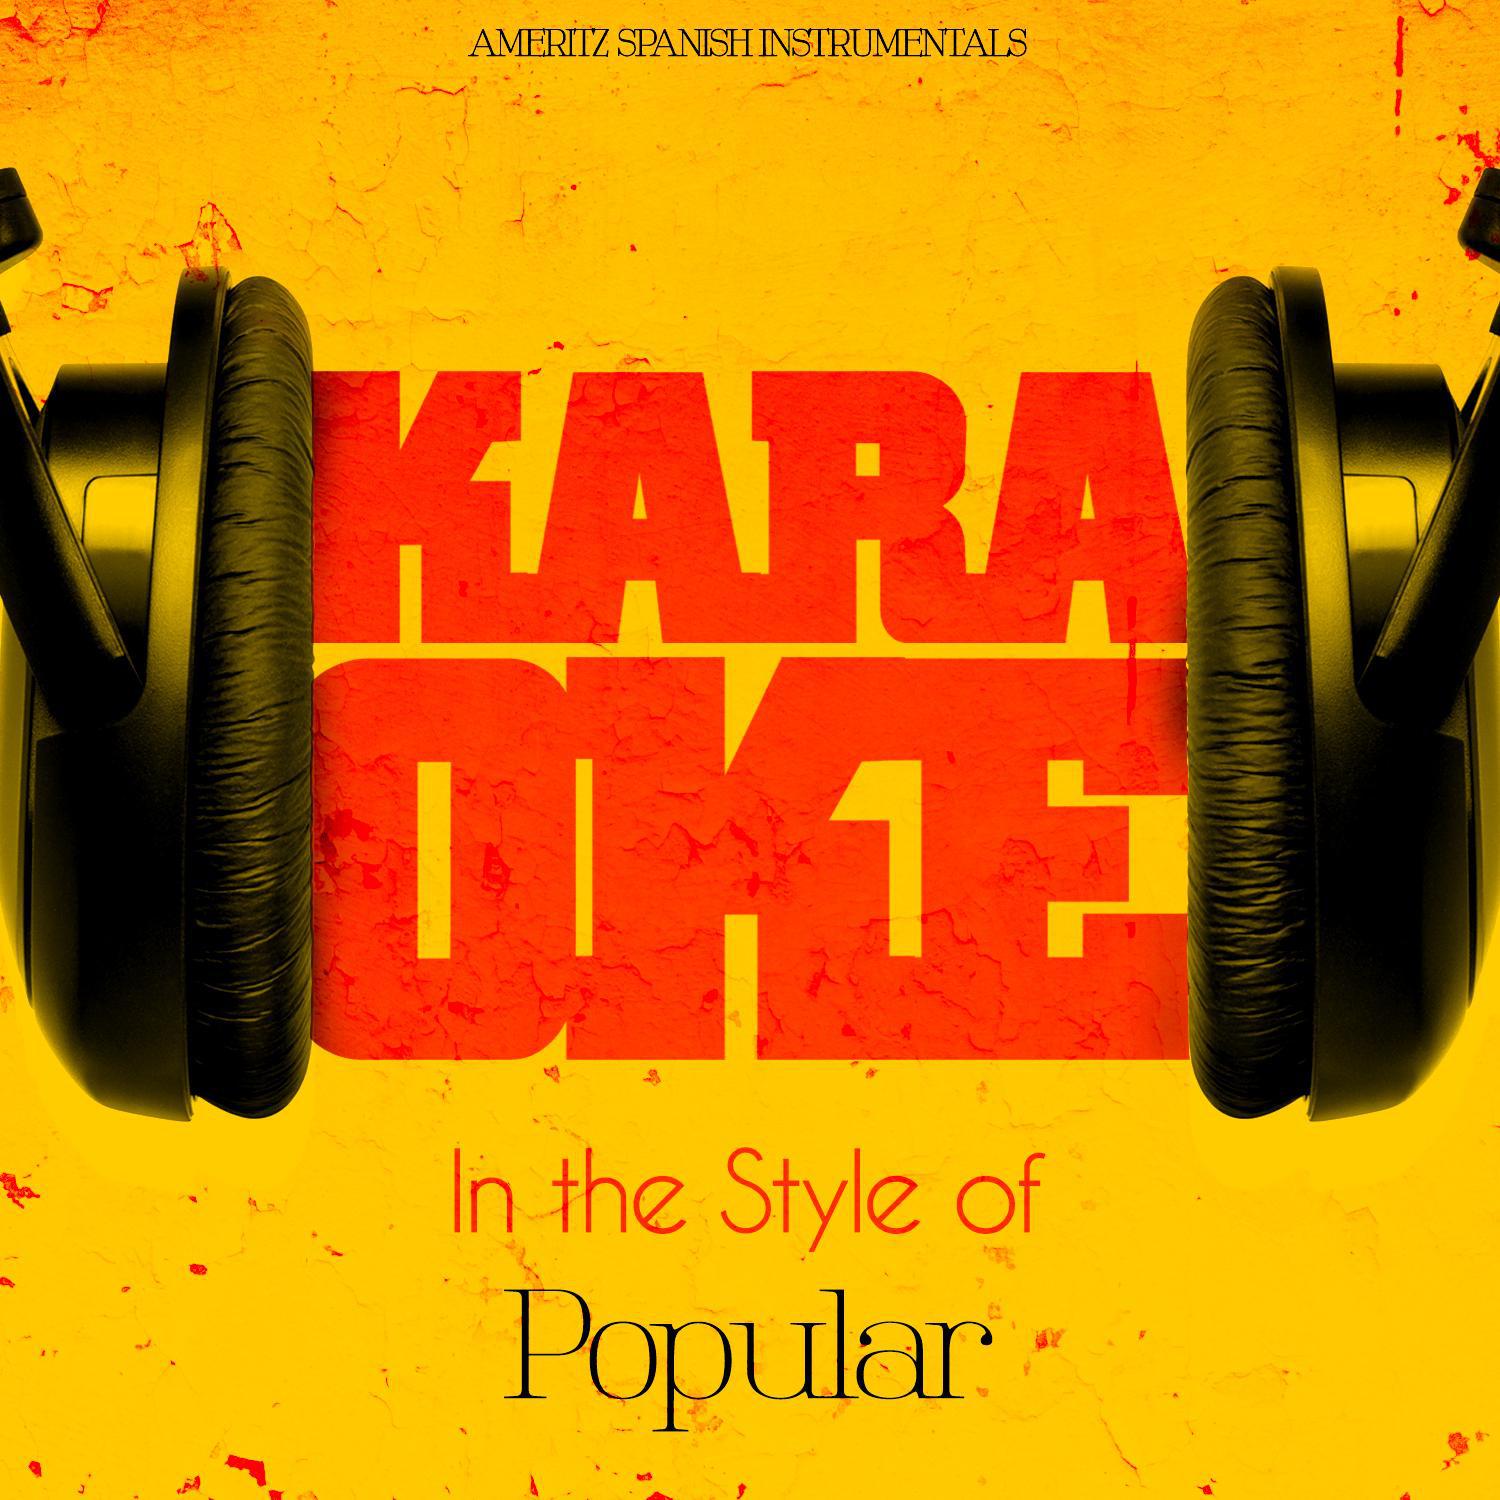 Karaoke - In the Style of Popular